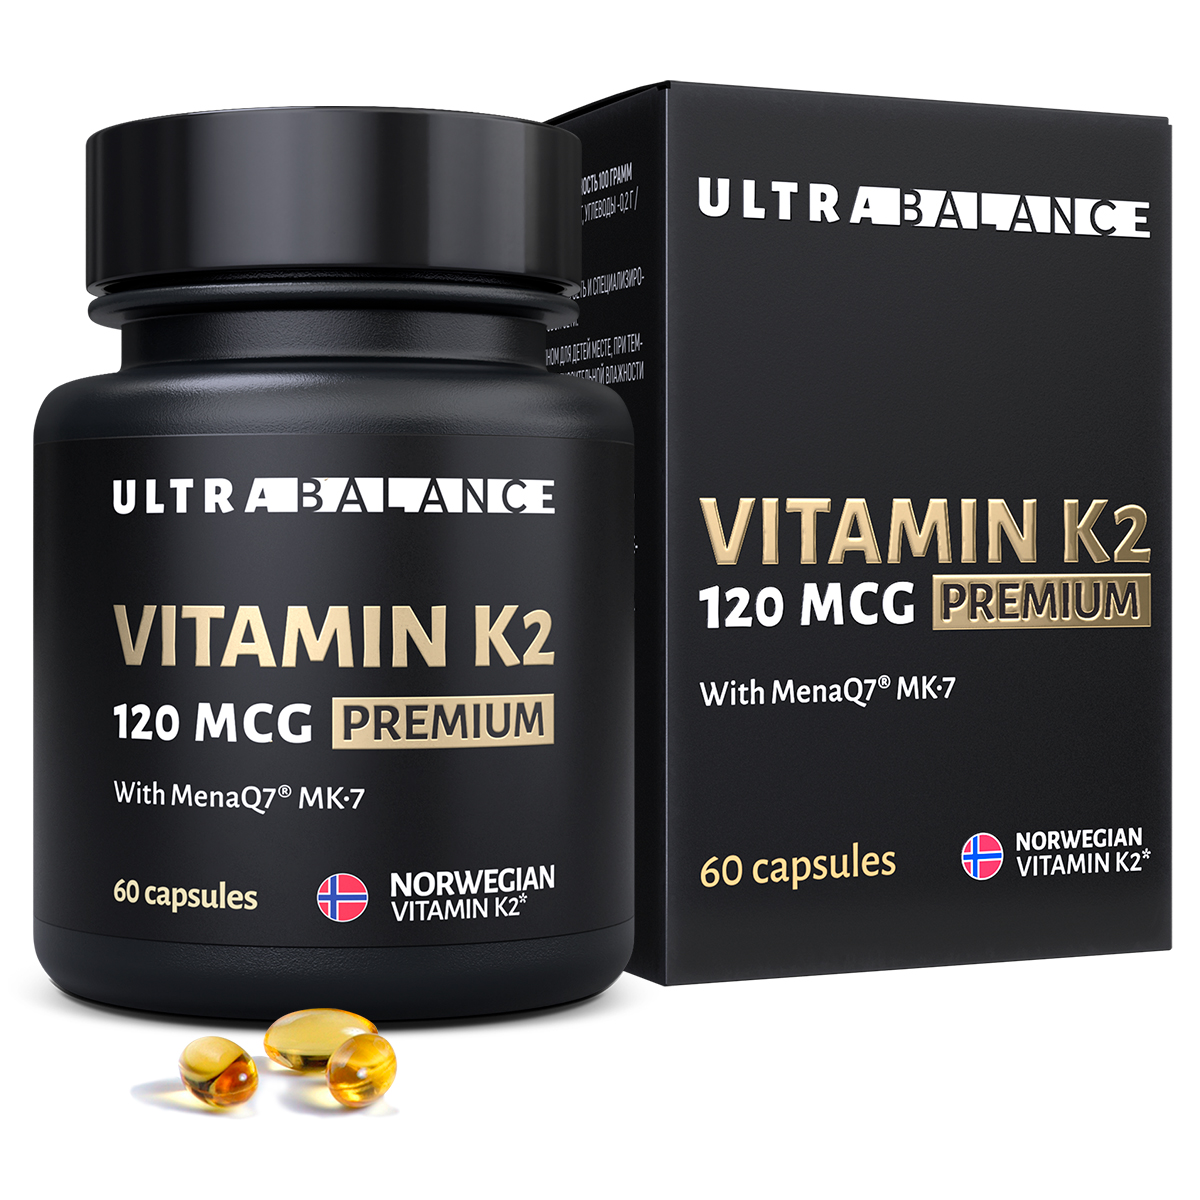 Витамин моно К2 МК-7 комплекс UltraBalance бад менахинон7 120 mcg Premium 60 капсул - фото 1